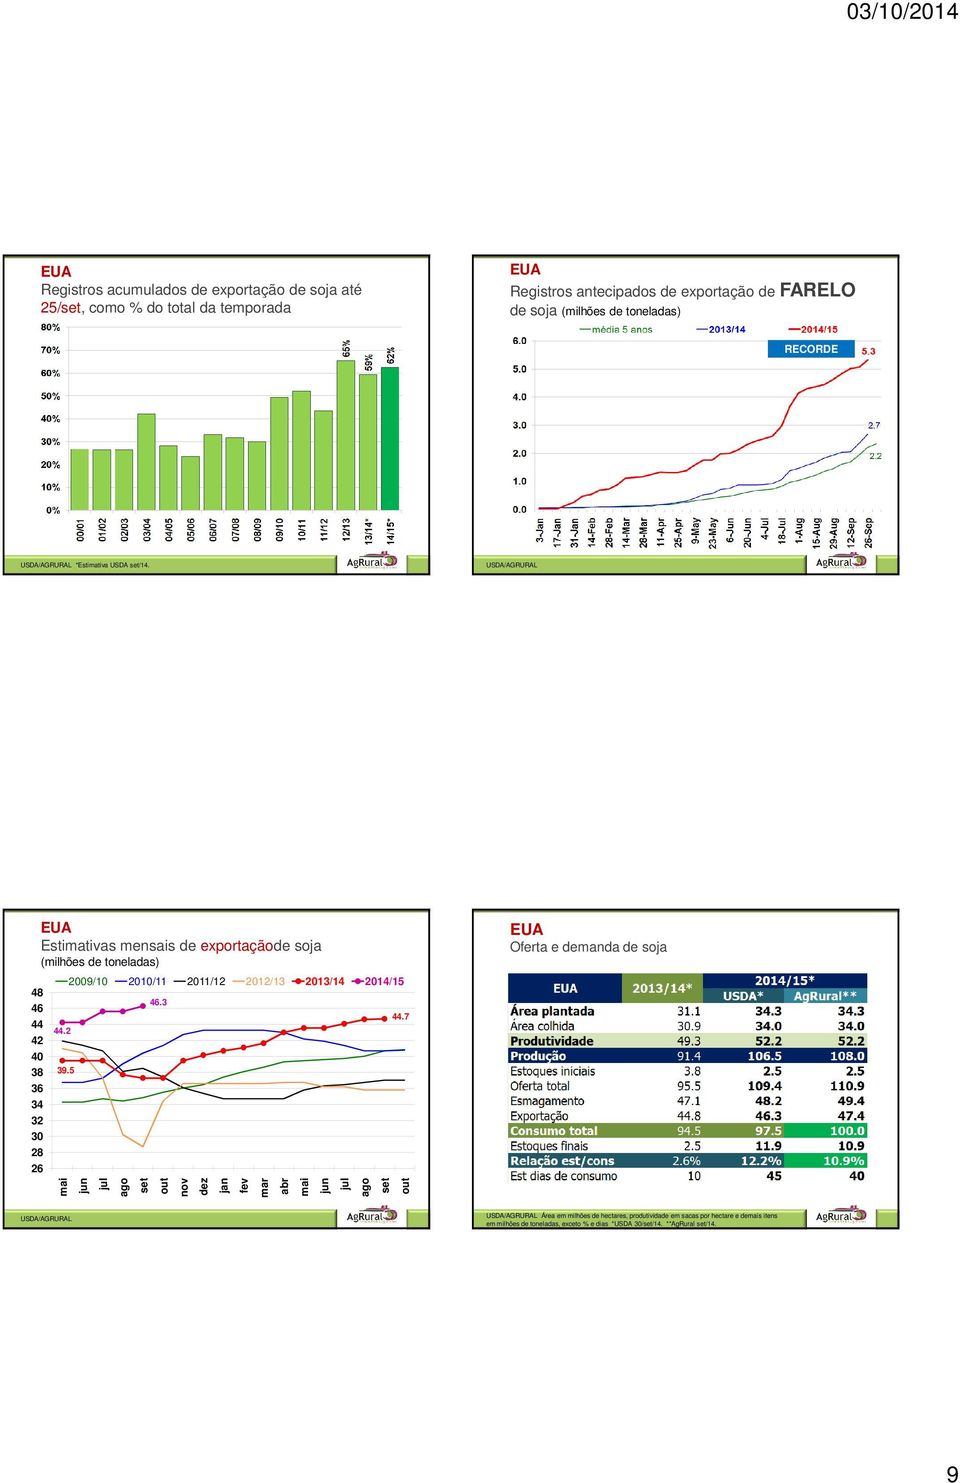 USDA/AGRURAL Estimativas mensais de exportaçãode soja (milhões de toneladas) Oferta e demanda de soja 48 46 44 42 40 38 36 34 32 30 28 26 44.2 39.